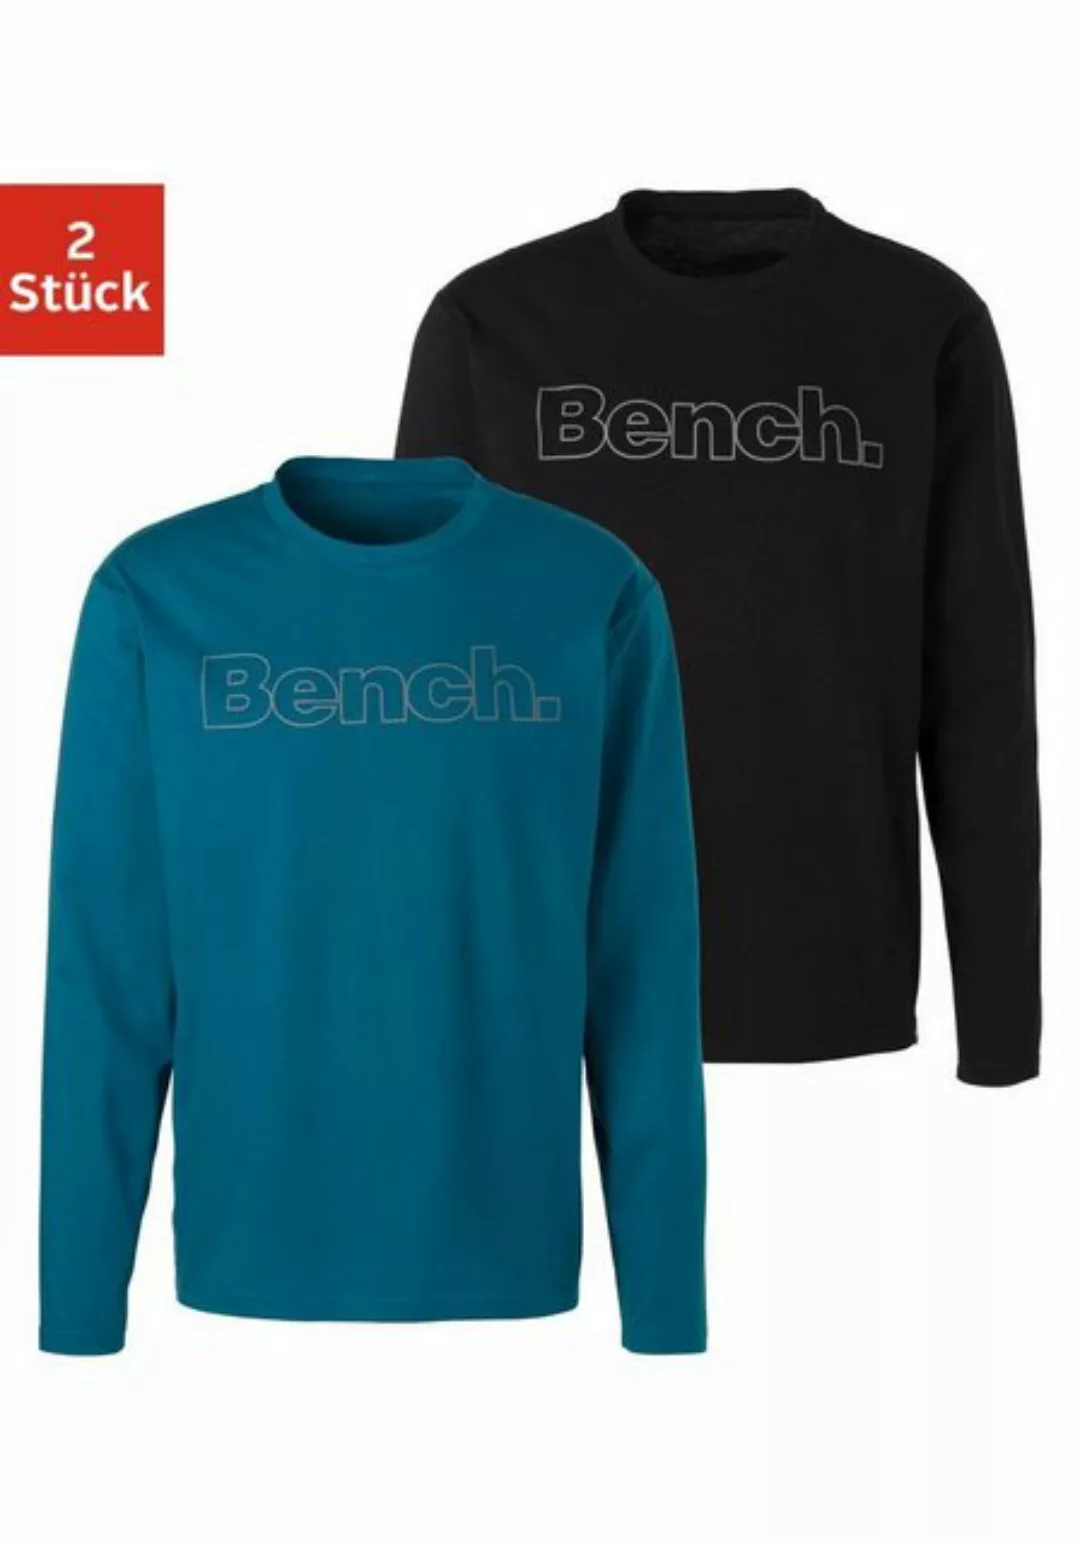 Bench. Loungewear Langarmshirt (2-tlg) mit Bench. Print vorn günstig online kaufen